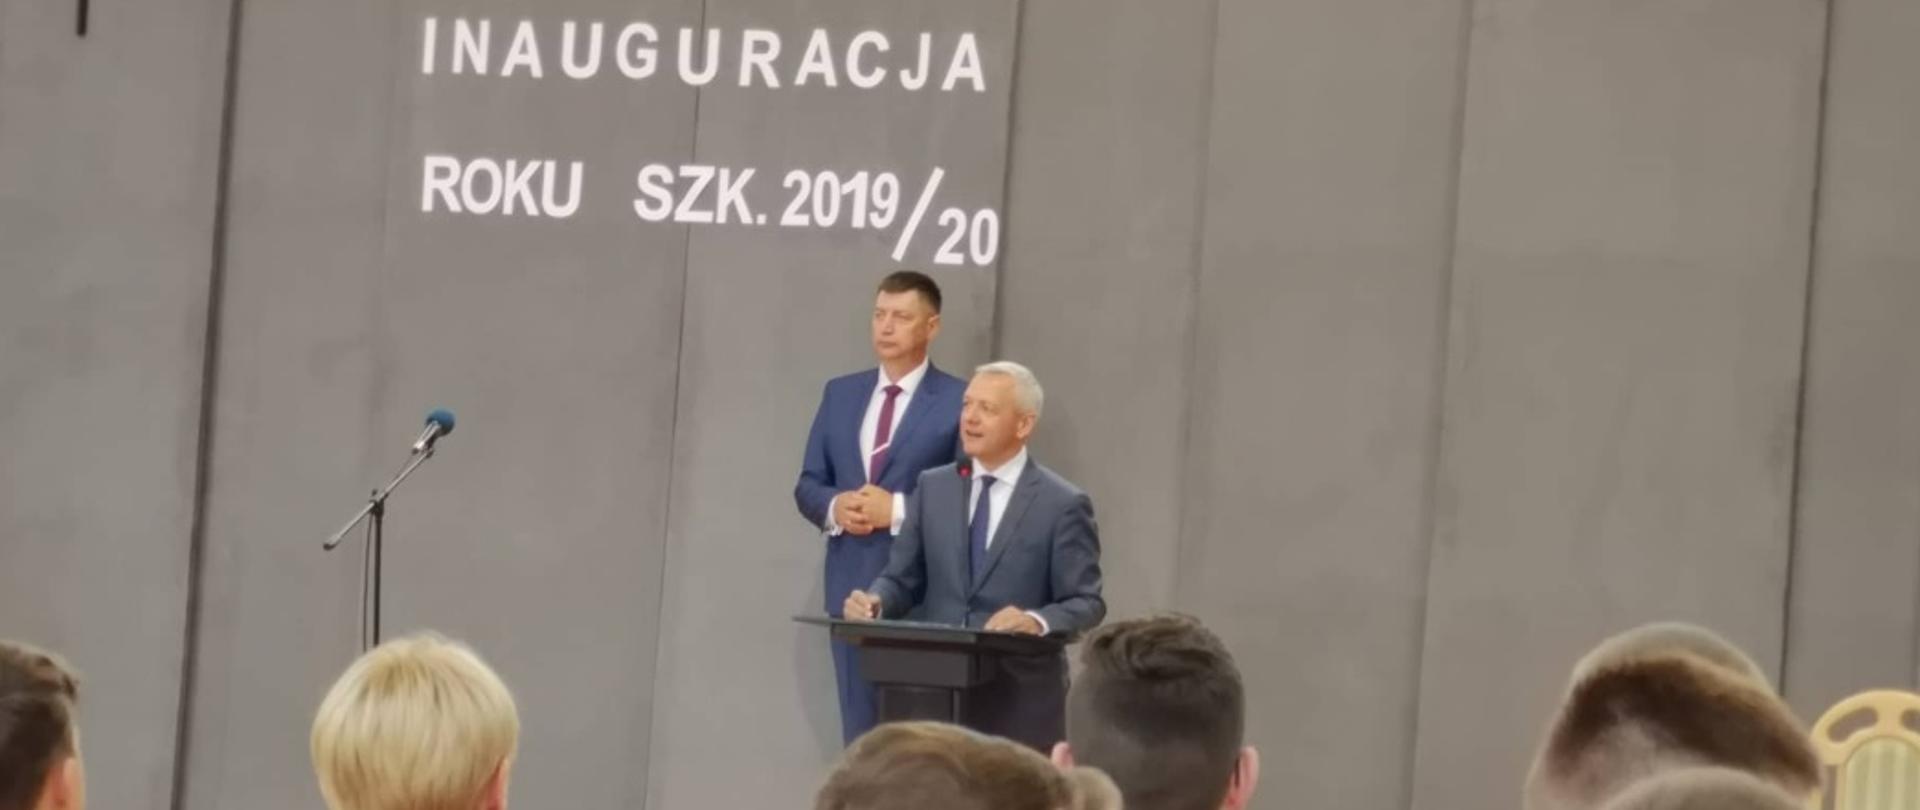 Minister Marek Zagórski na tle napisu "Inauguracja roku szkolnego 2019/20". Przed nim stoją uczniowie